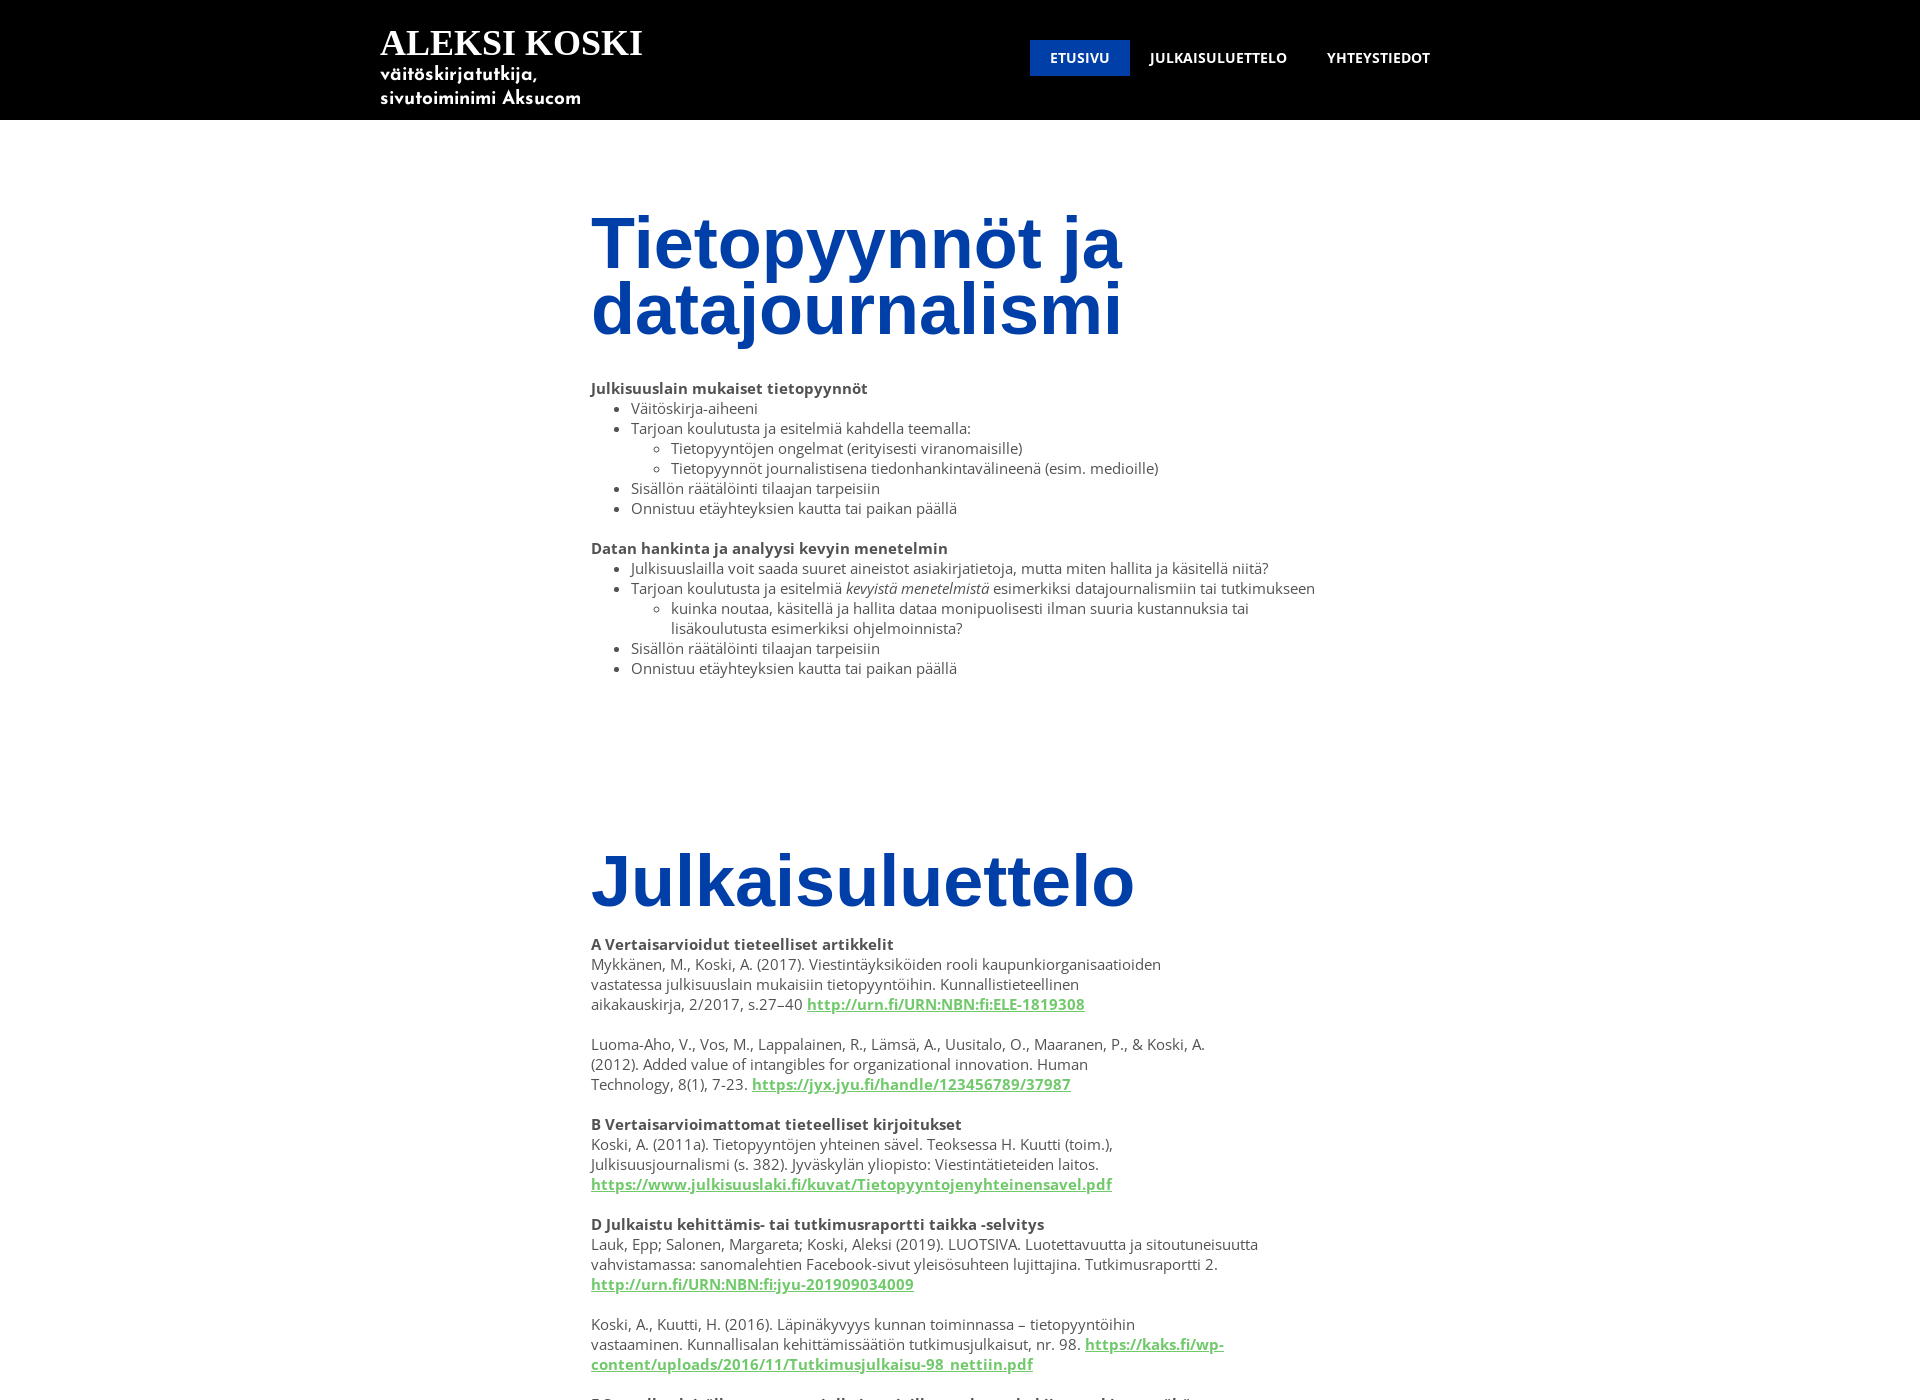 Näyttökuva aksucom.fi